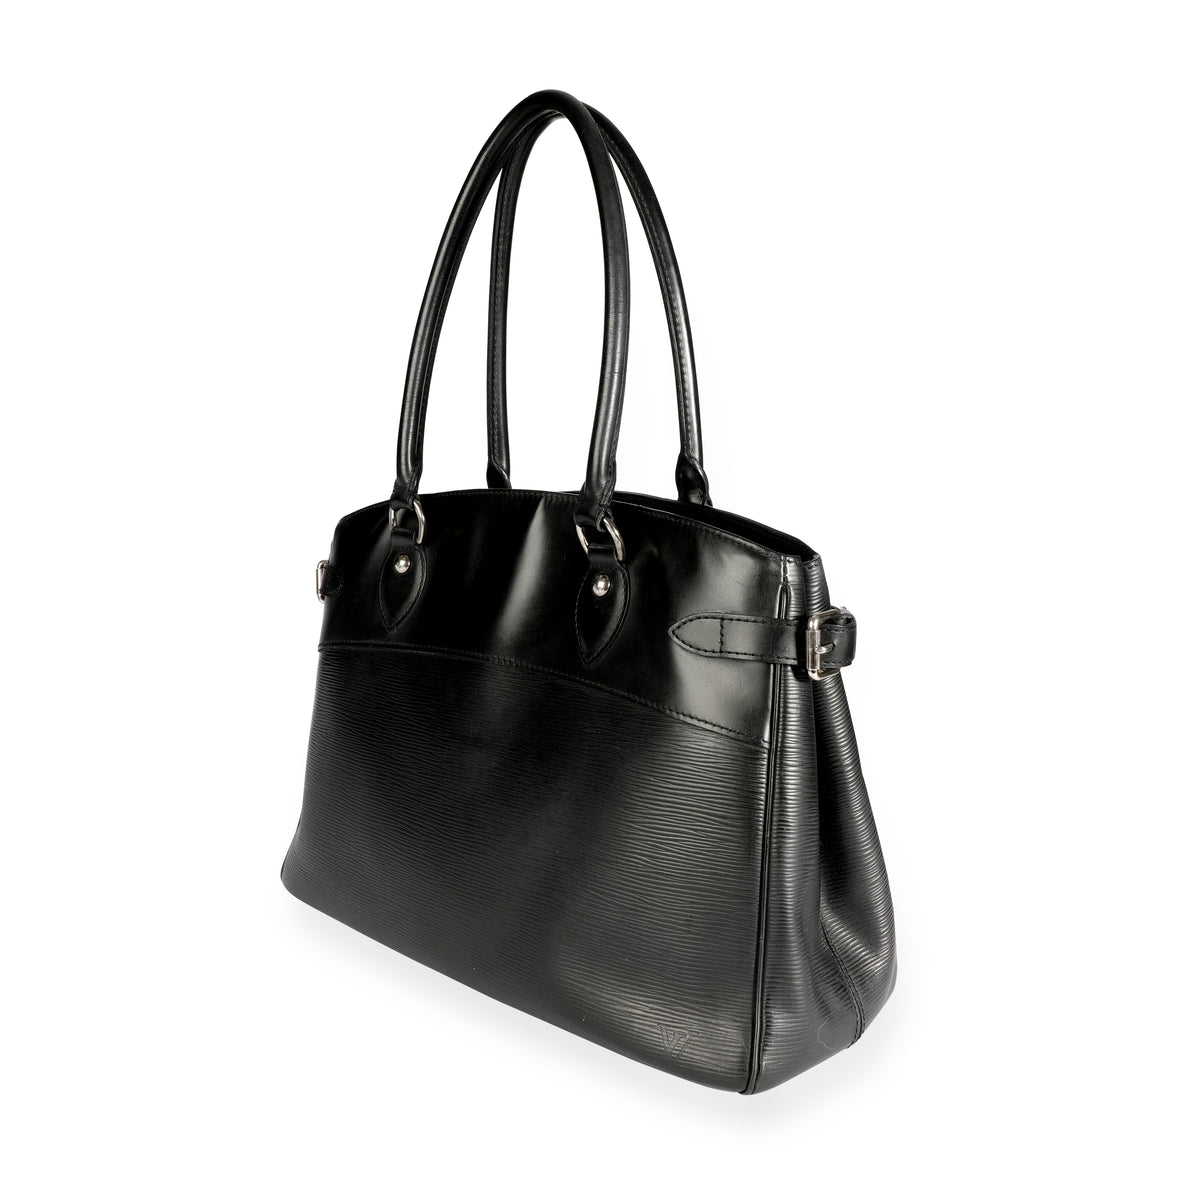 Louis Vuitton Passy GM, Epi Leather